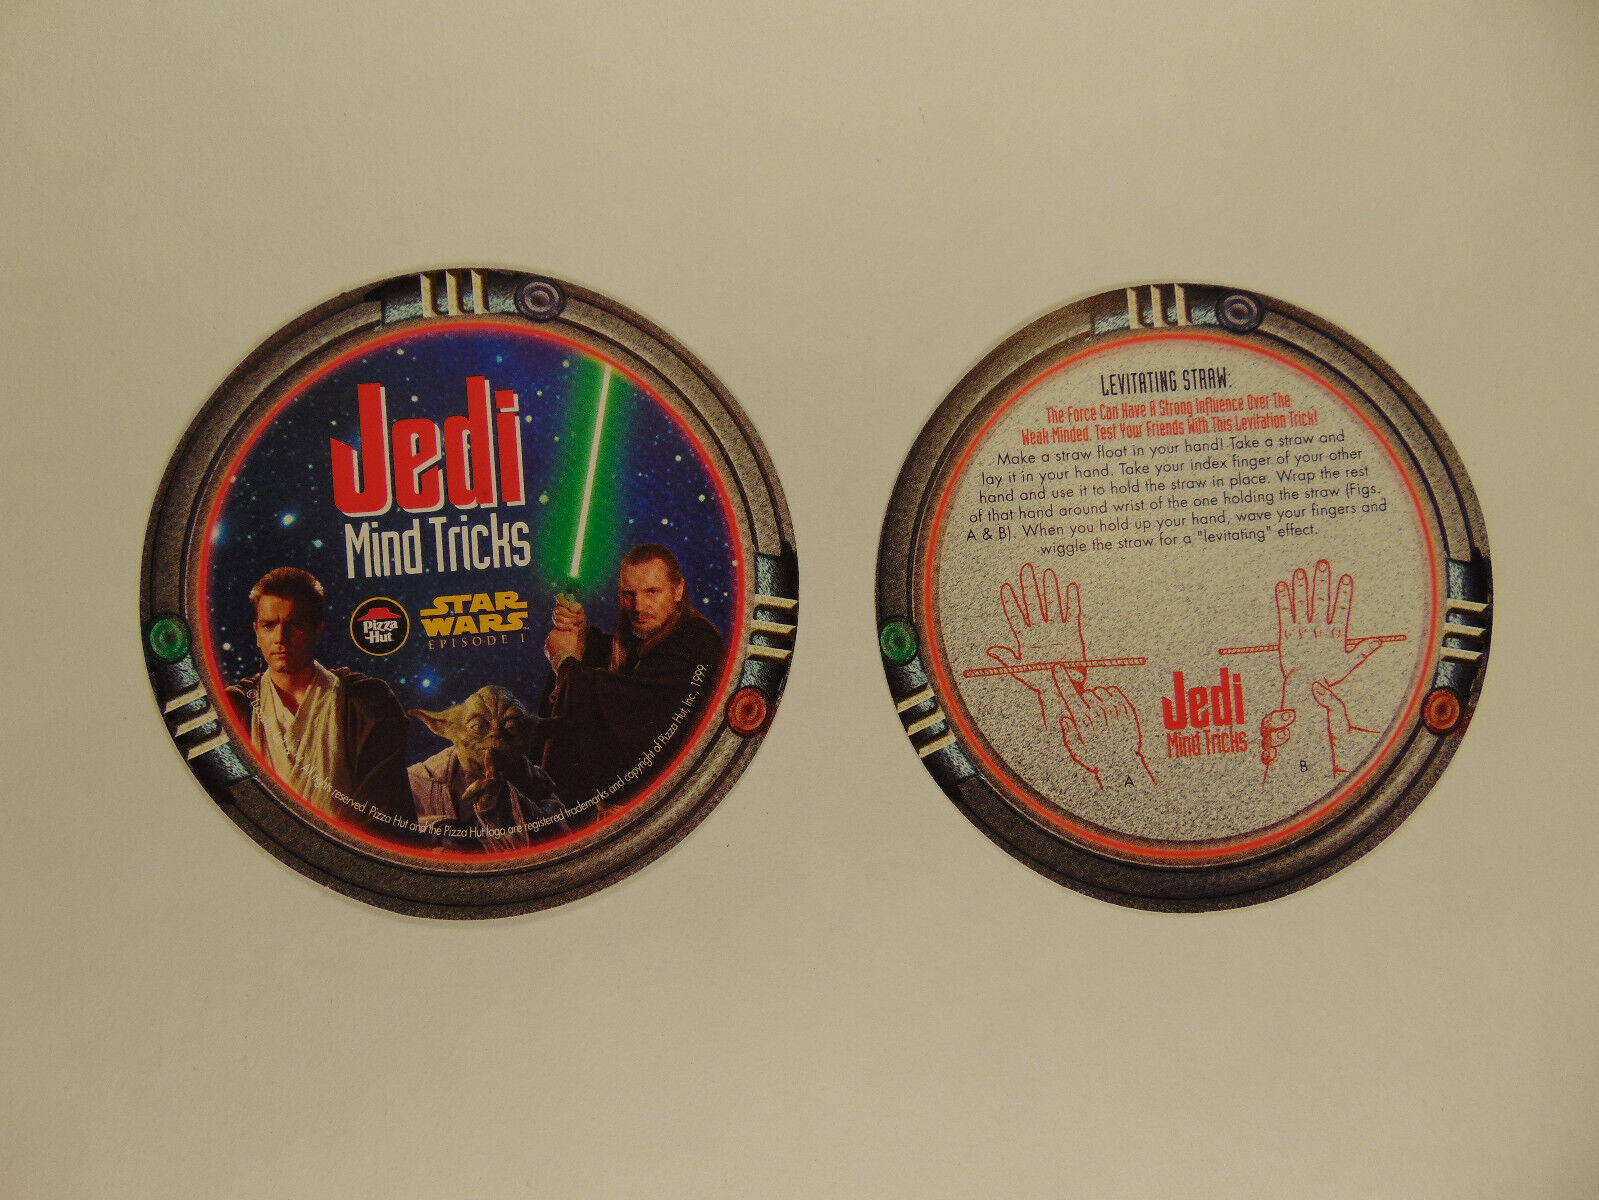 Star Wars episode 1 Pizza Hut tie-in coasters (Jedi Mind Tricks) 1999 (set of 5) Без бренда - фотография #3